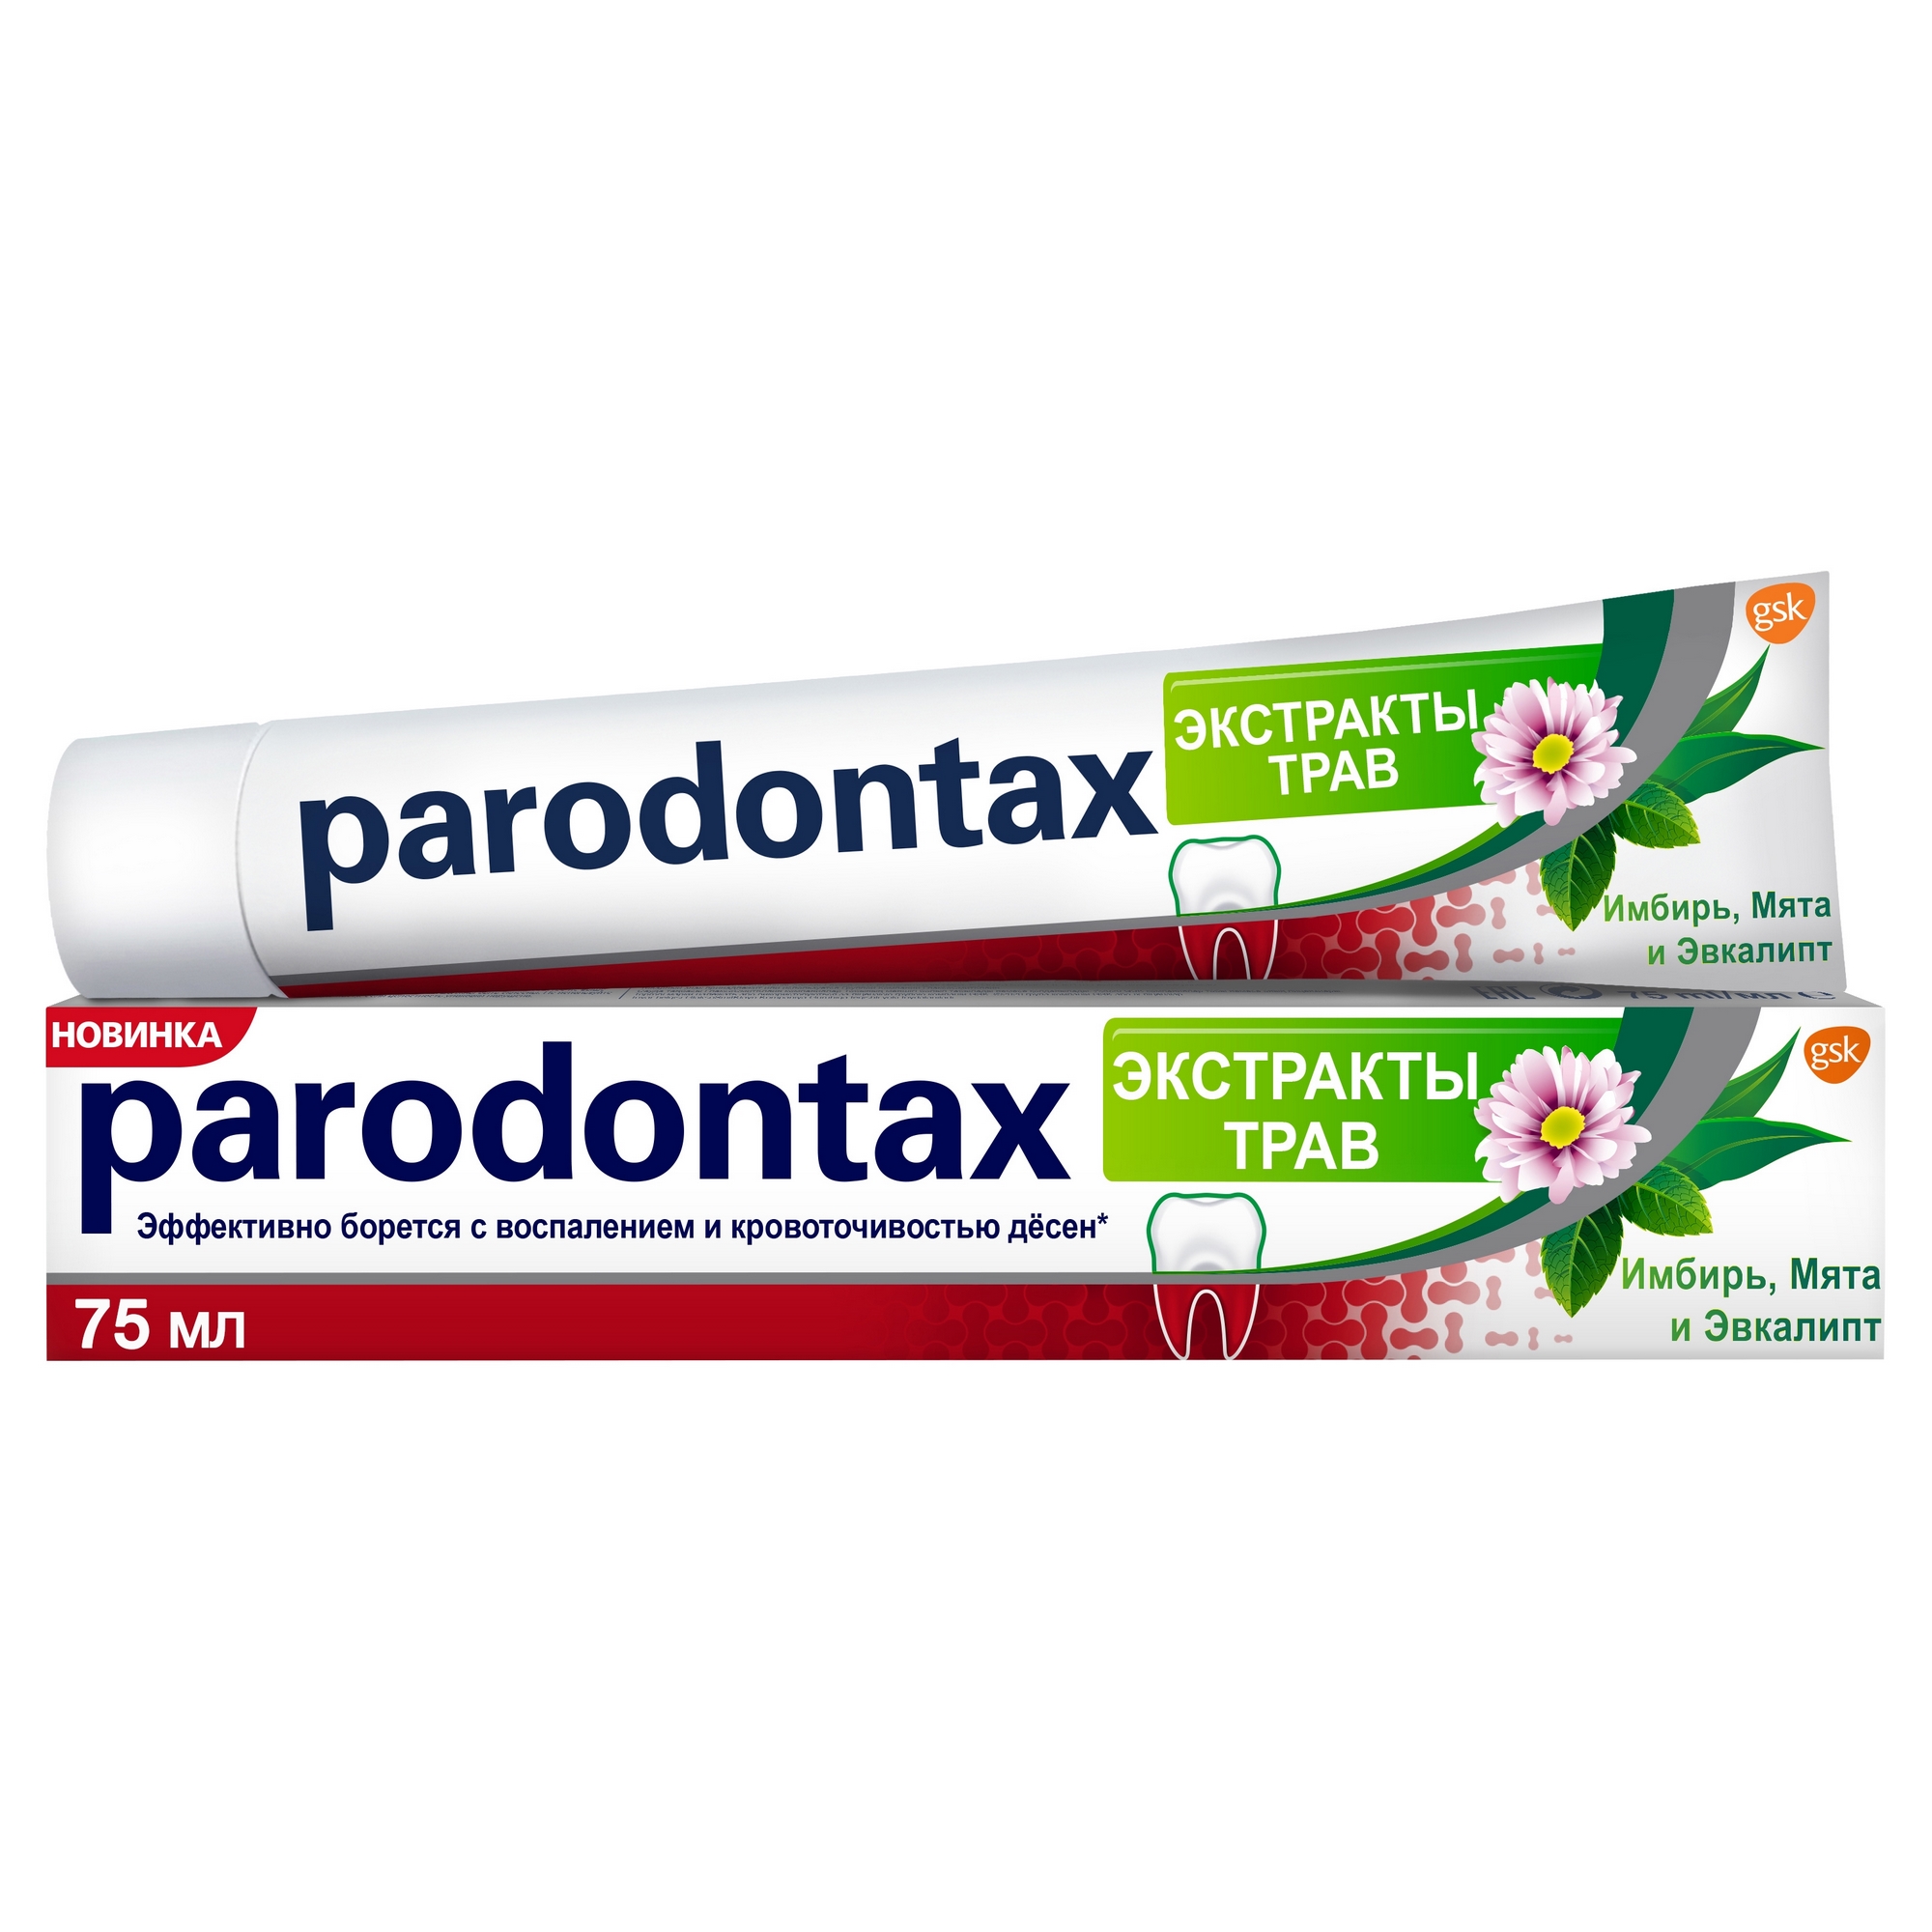 зубная паста paradontax экстракты трав 75 мл Зубная паста Parodontax Экстракты трав 75 мл